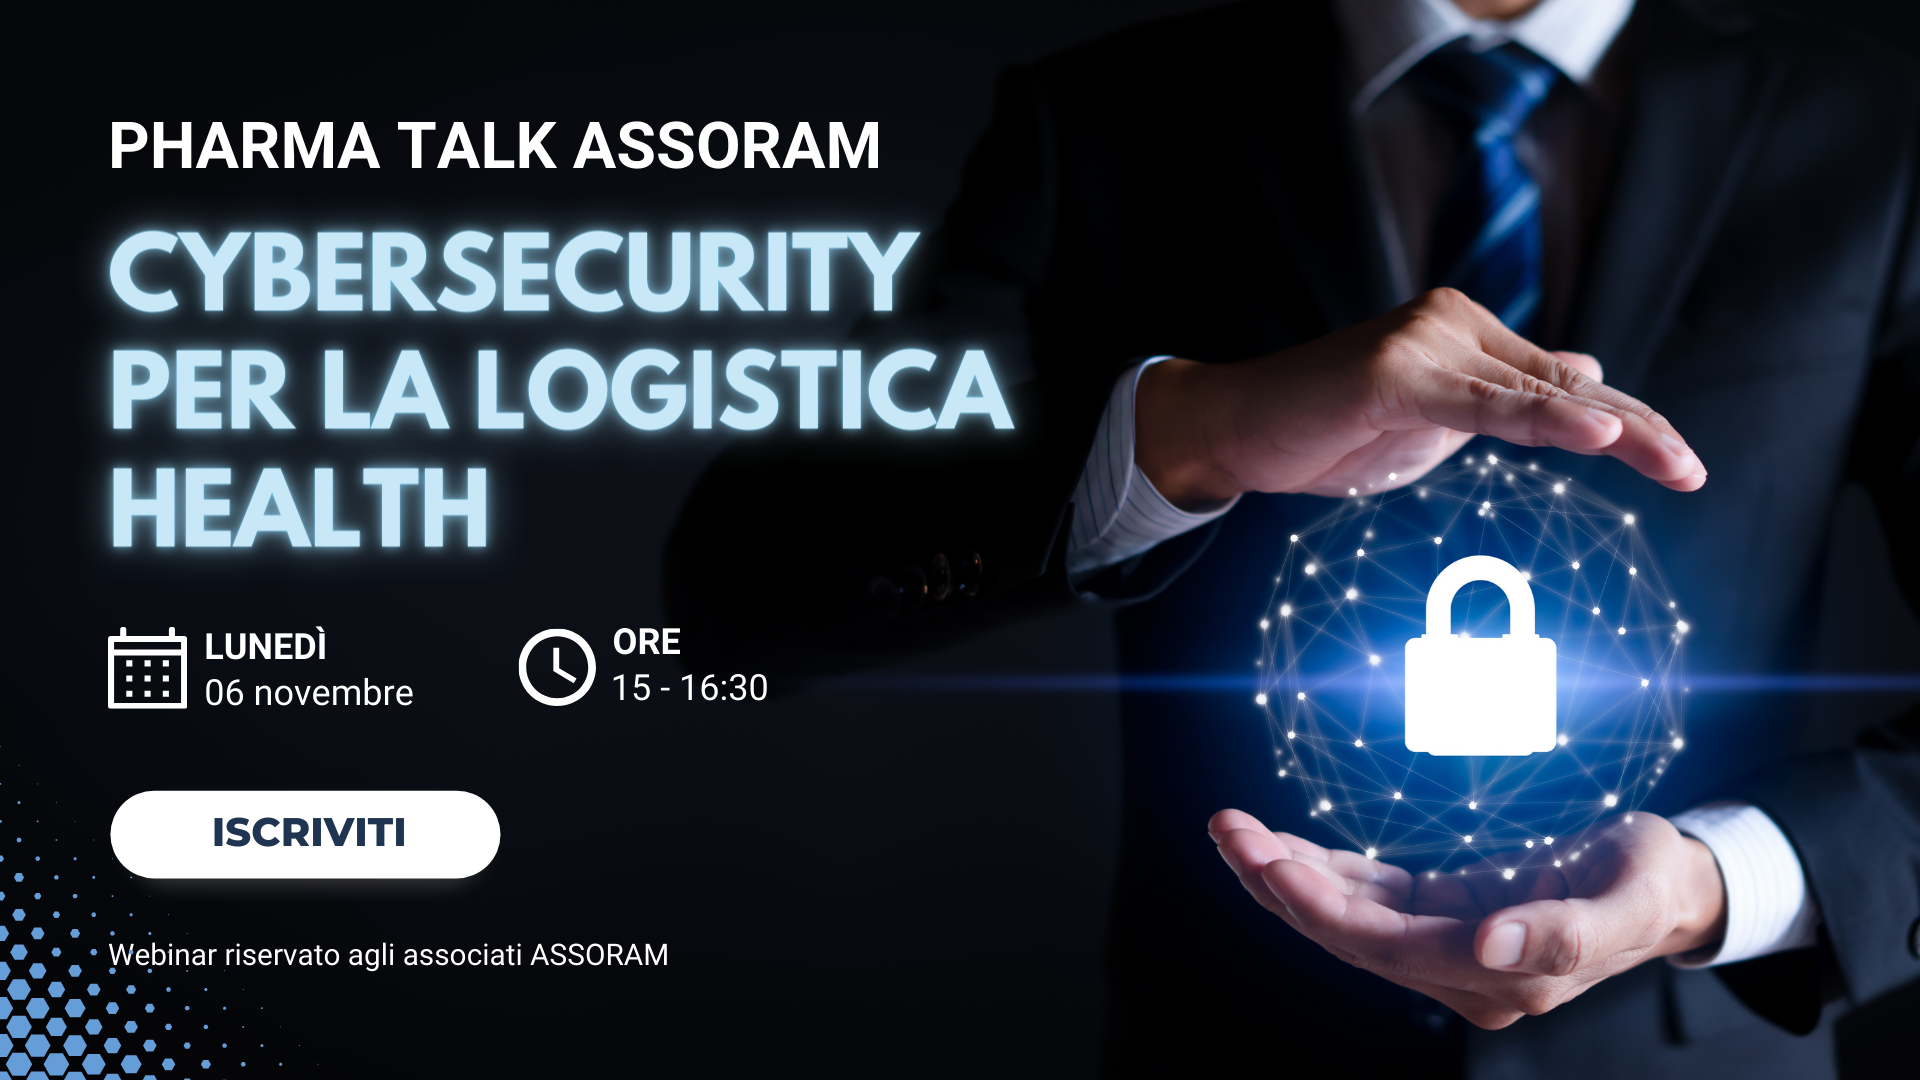 Scopri di più sull'articolo PHARMA TALK ASSORAM – Cybersecurity per la logistica health: attività e incentivi